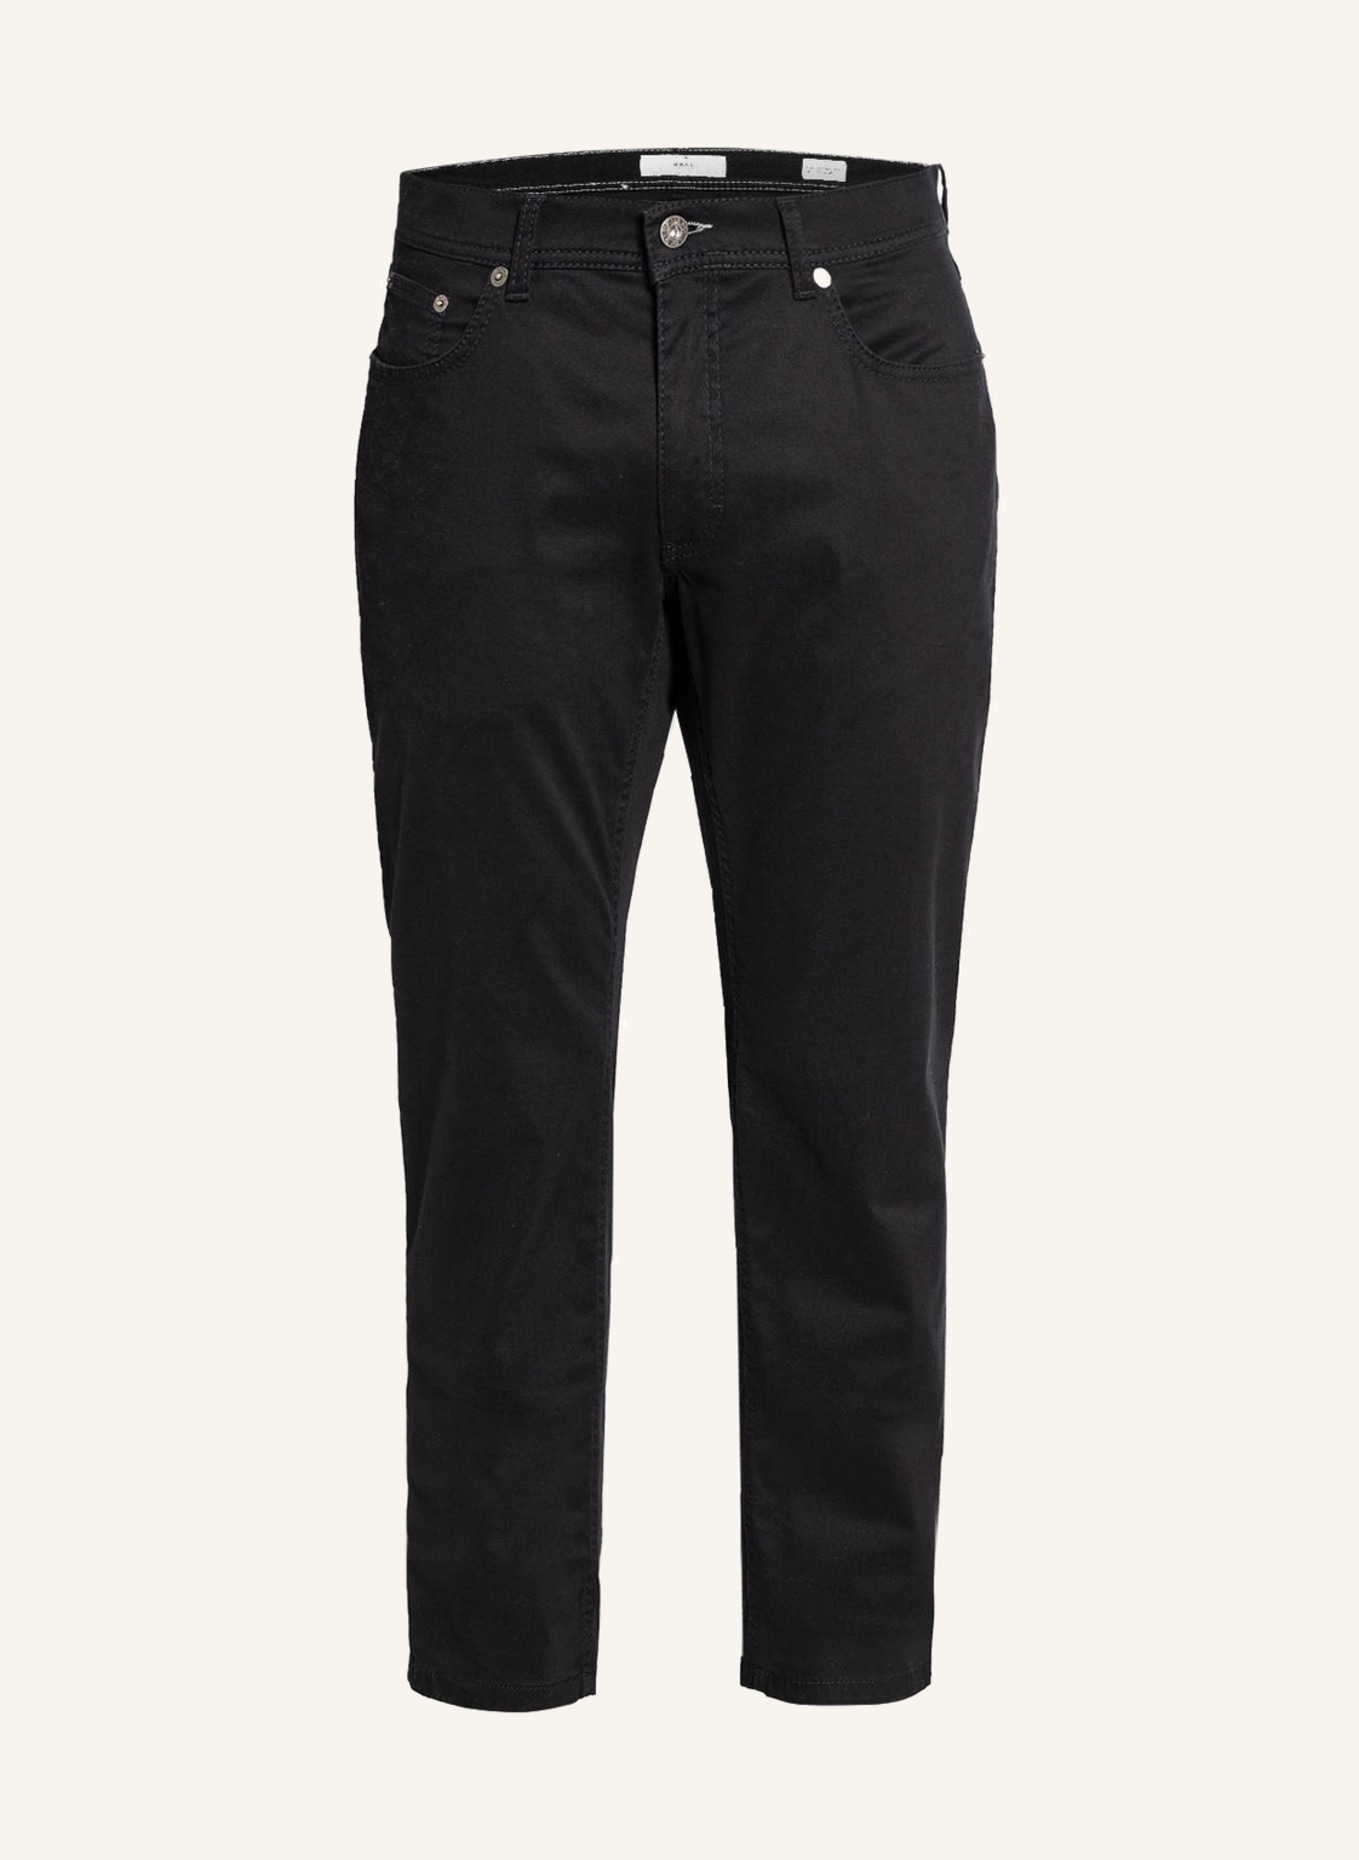 BRAX Trousers COOPER FANCY regular in 01 perma black | Breuninger